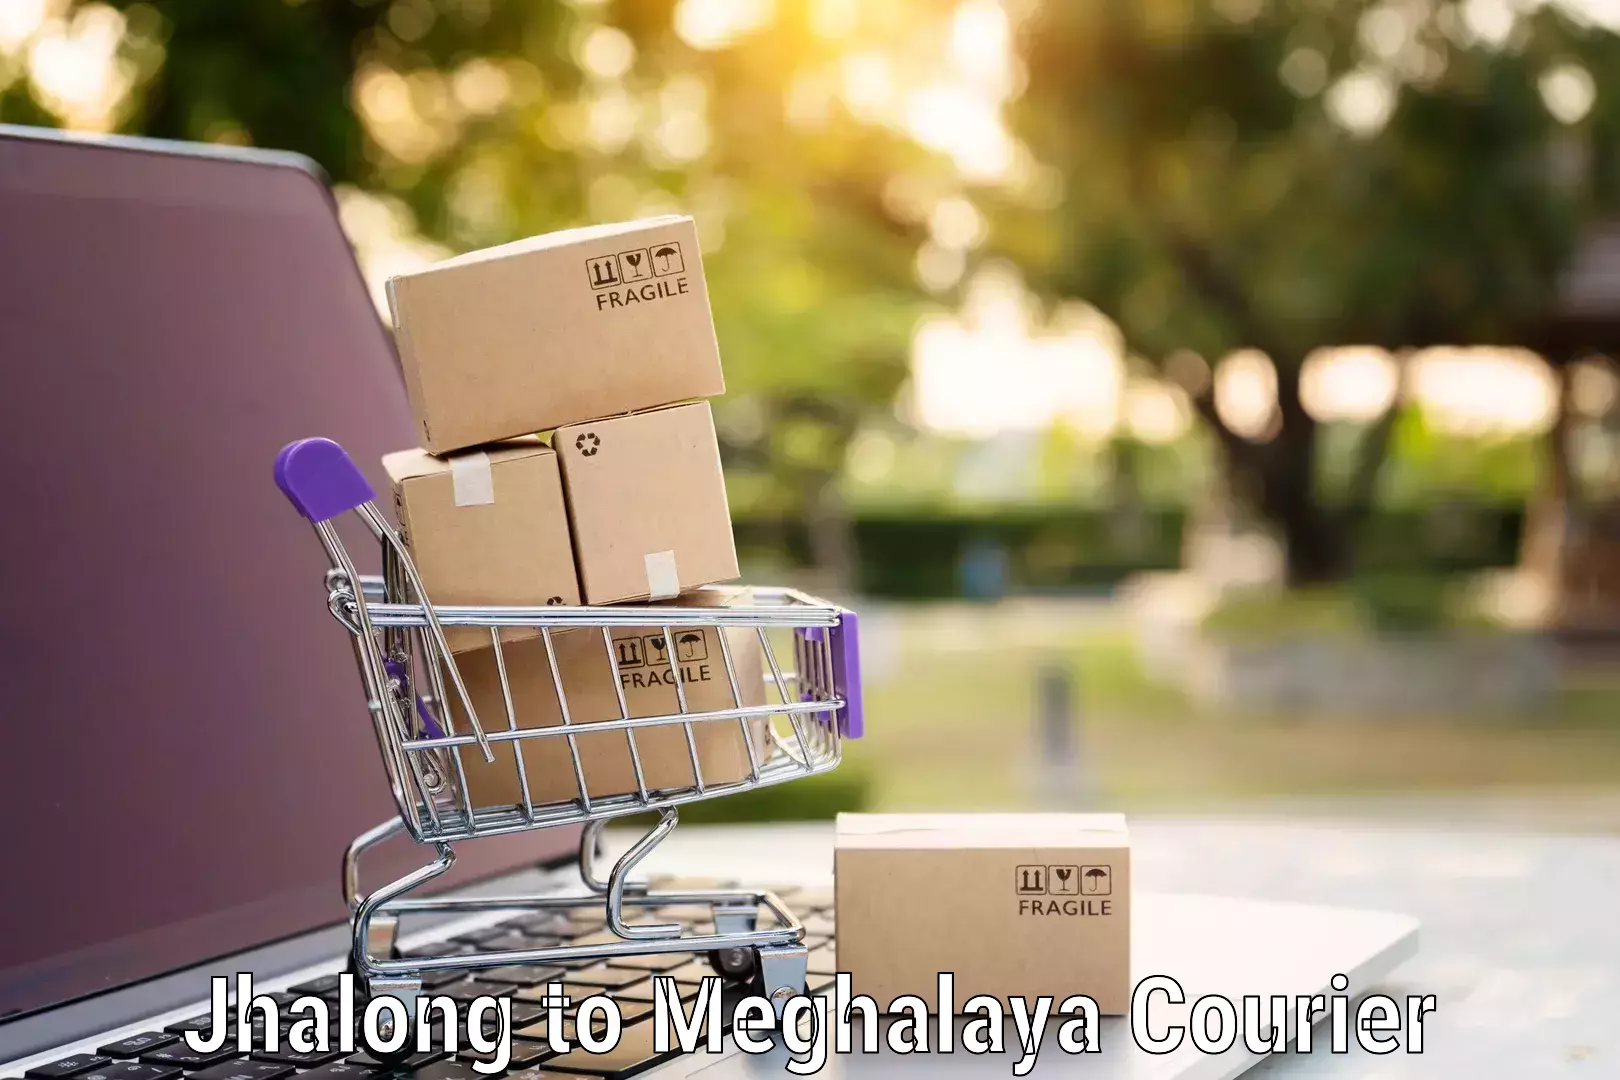 Professional moving company Jhalong to Meghalaya